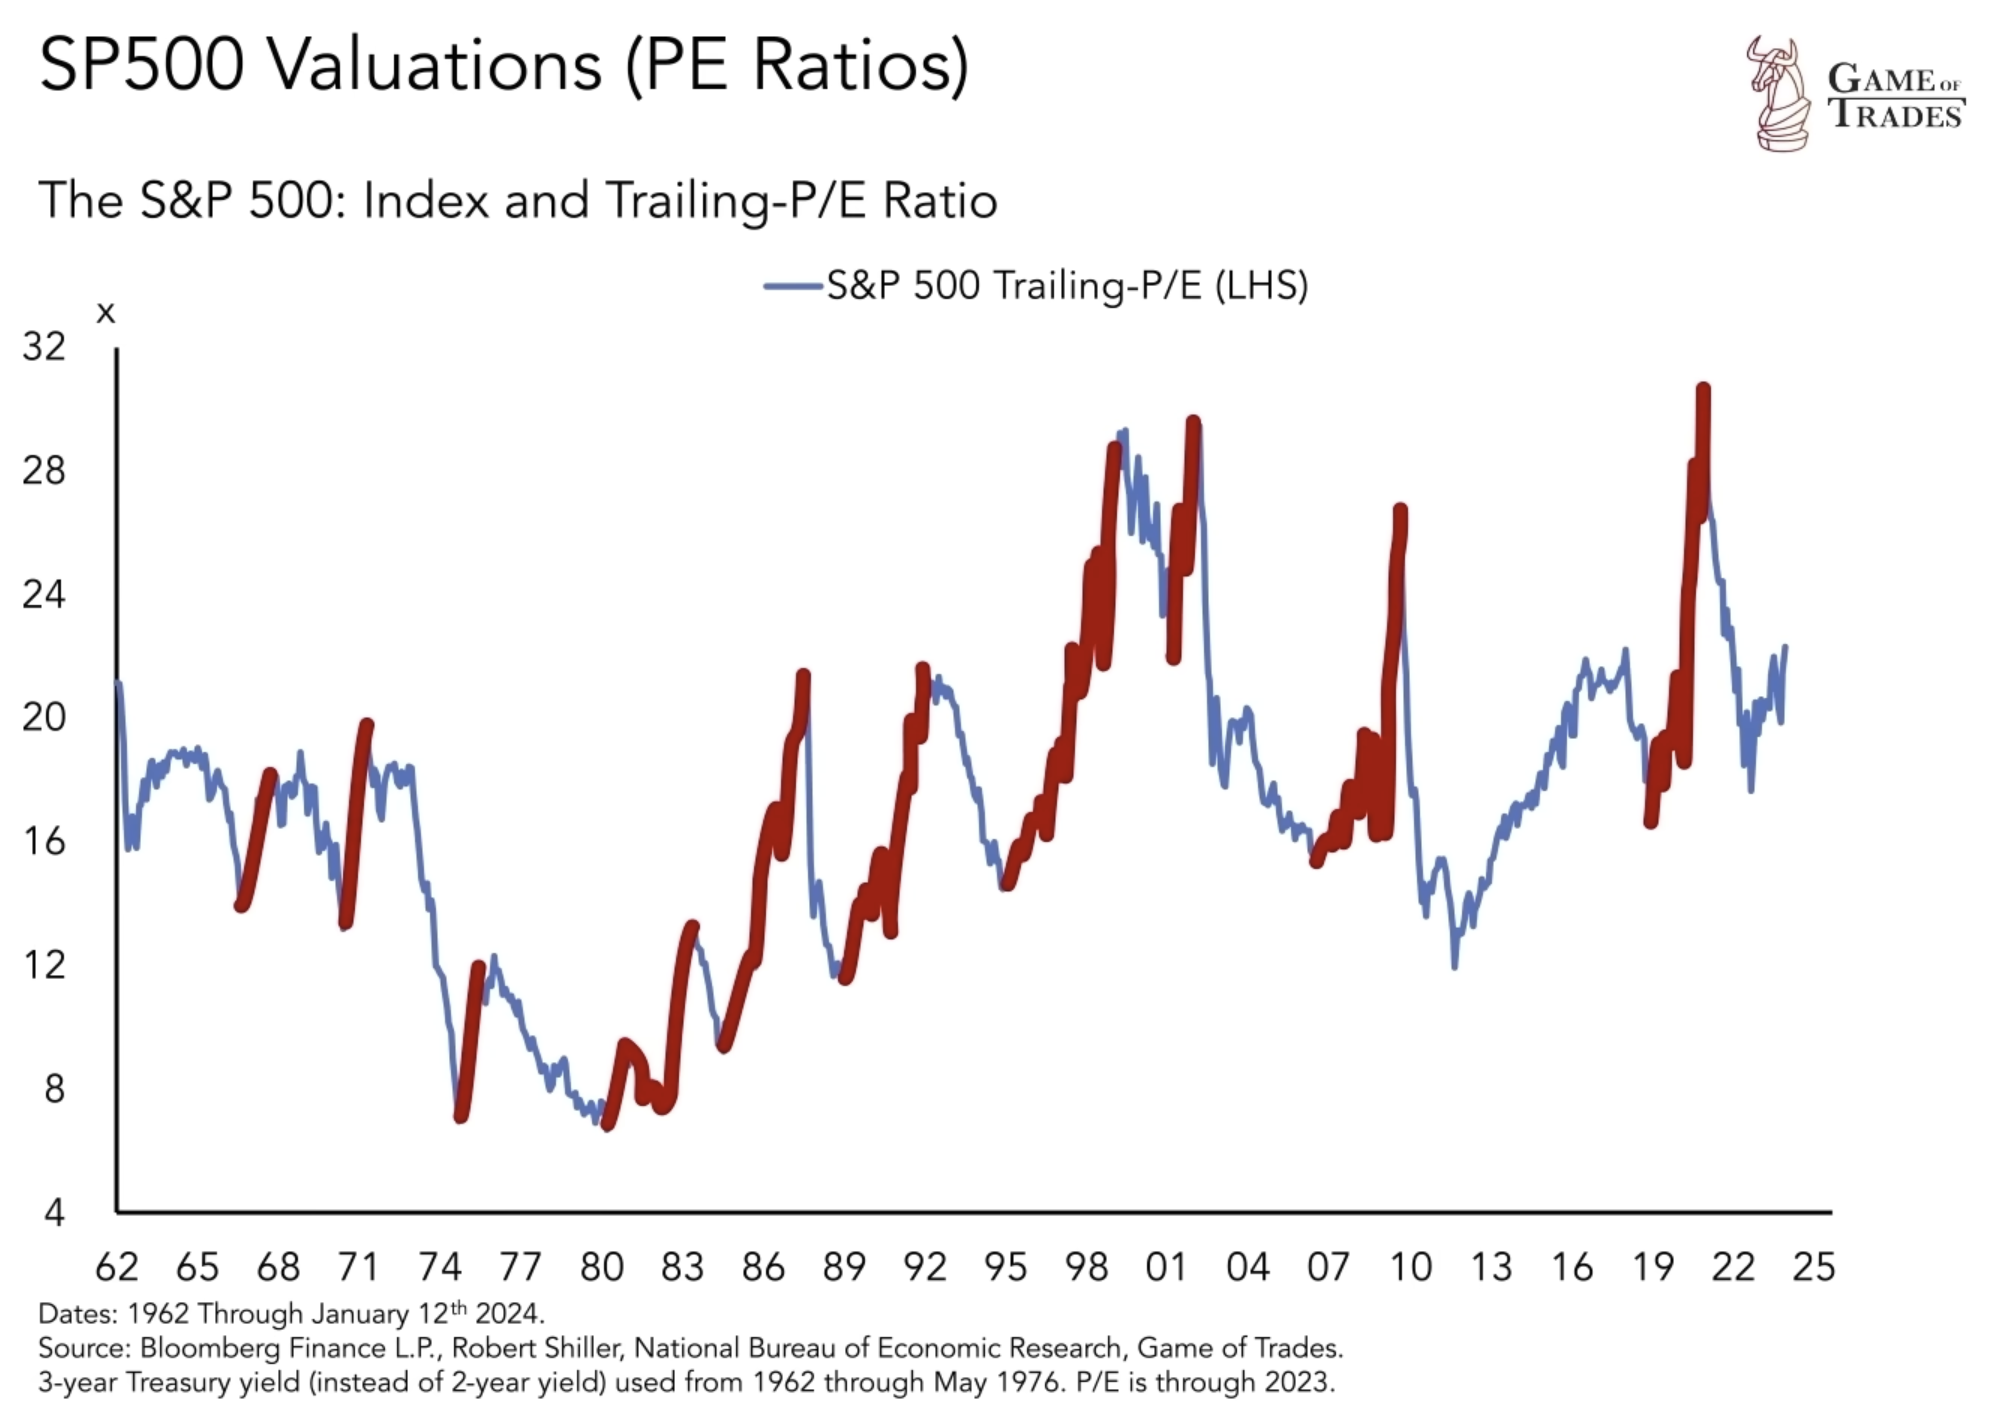 S&P 500 Index and trailing-P/E Ratio